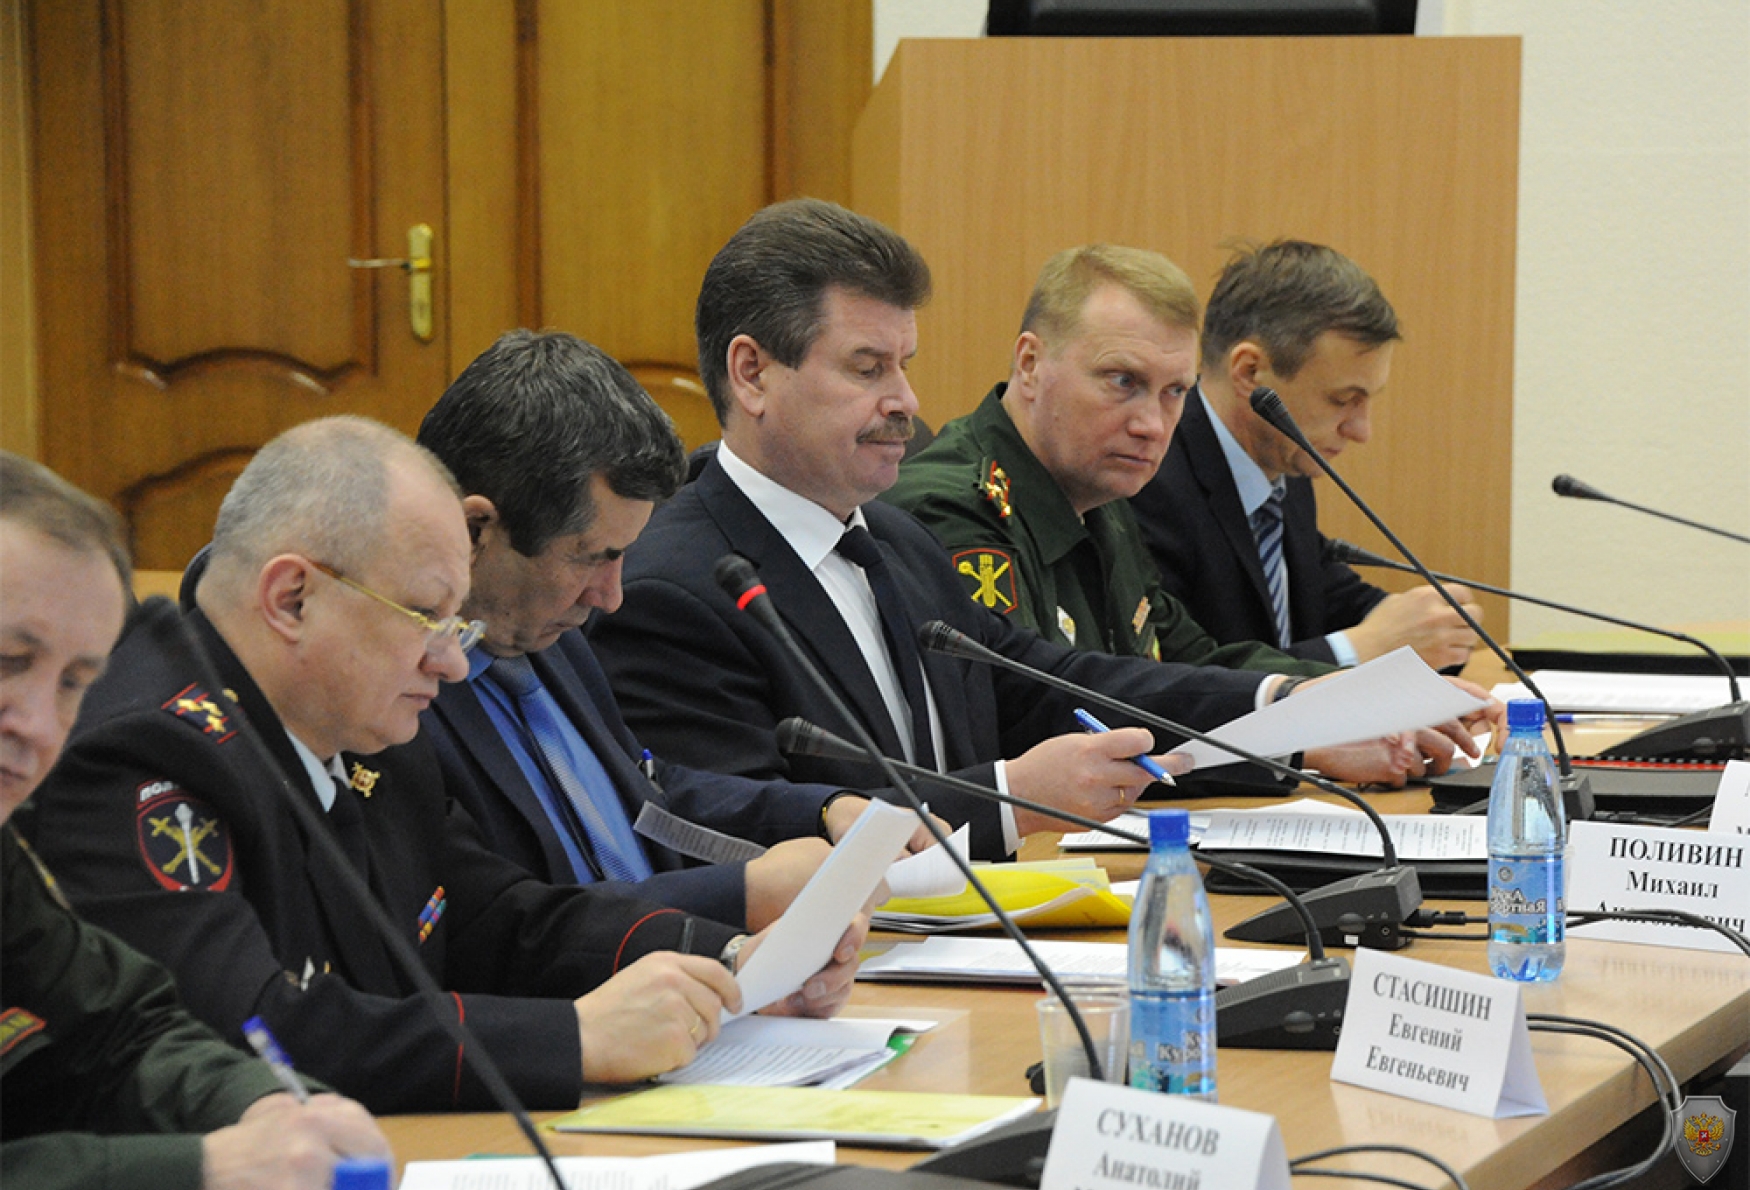 Участники заседания знакомятся с проектом решения по вопросу о реализации Комплексного плана противодействия идеологии терроризма в Забайкальском крае